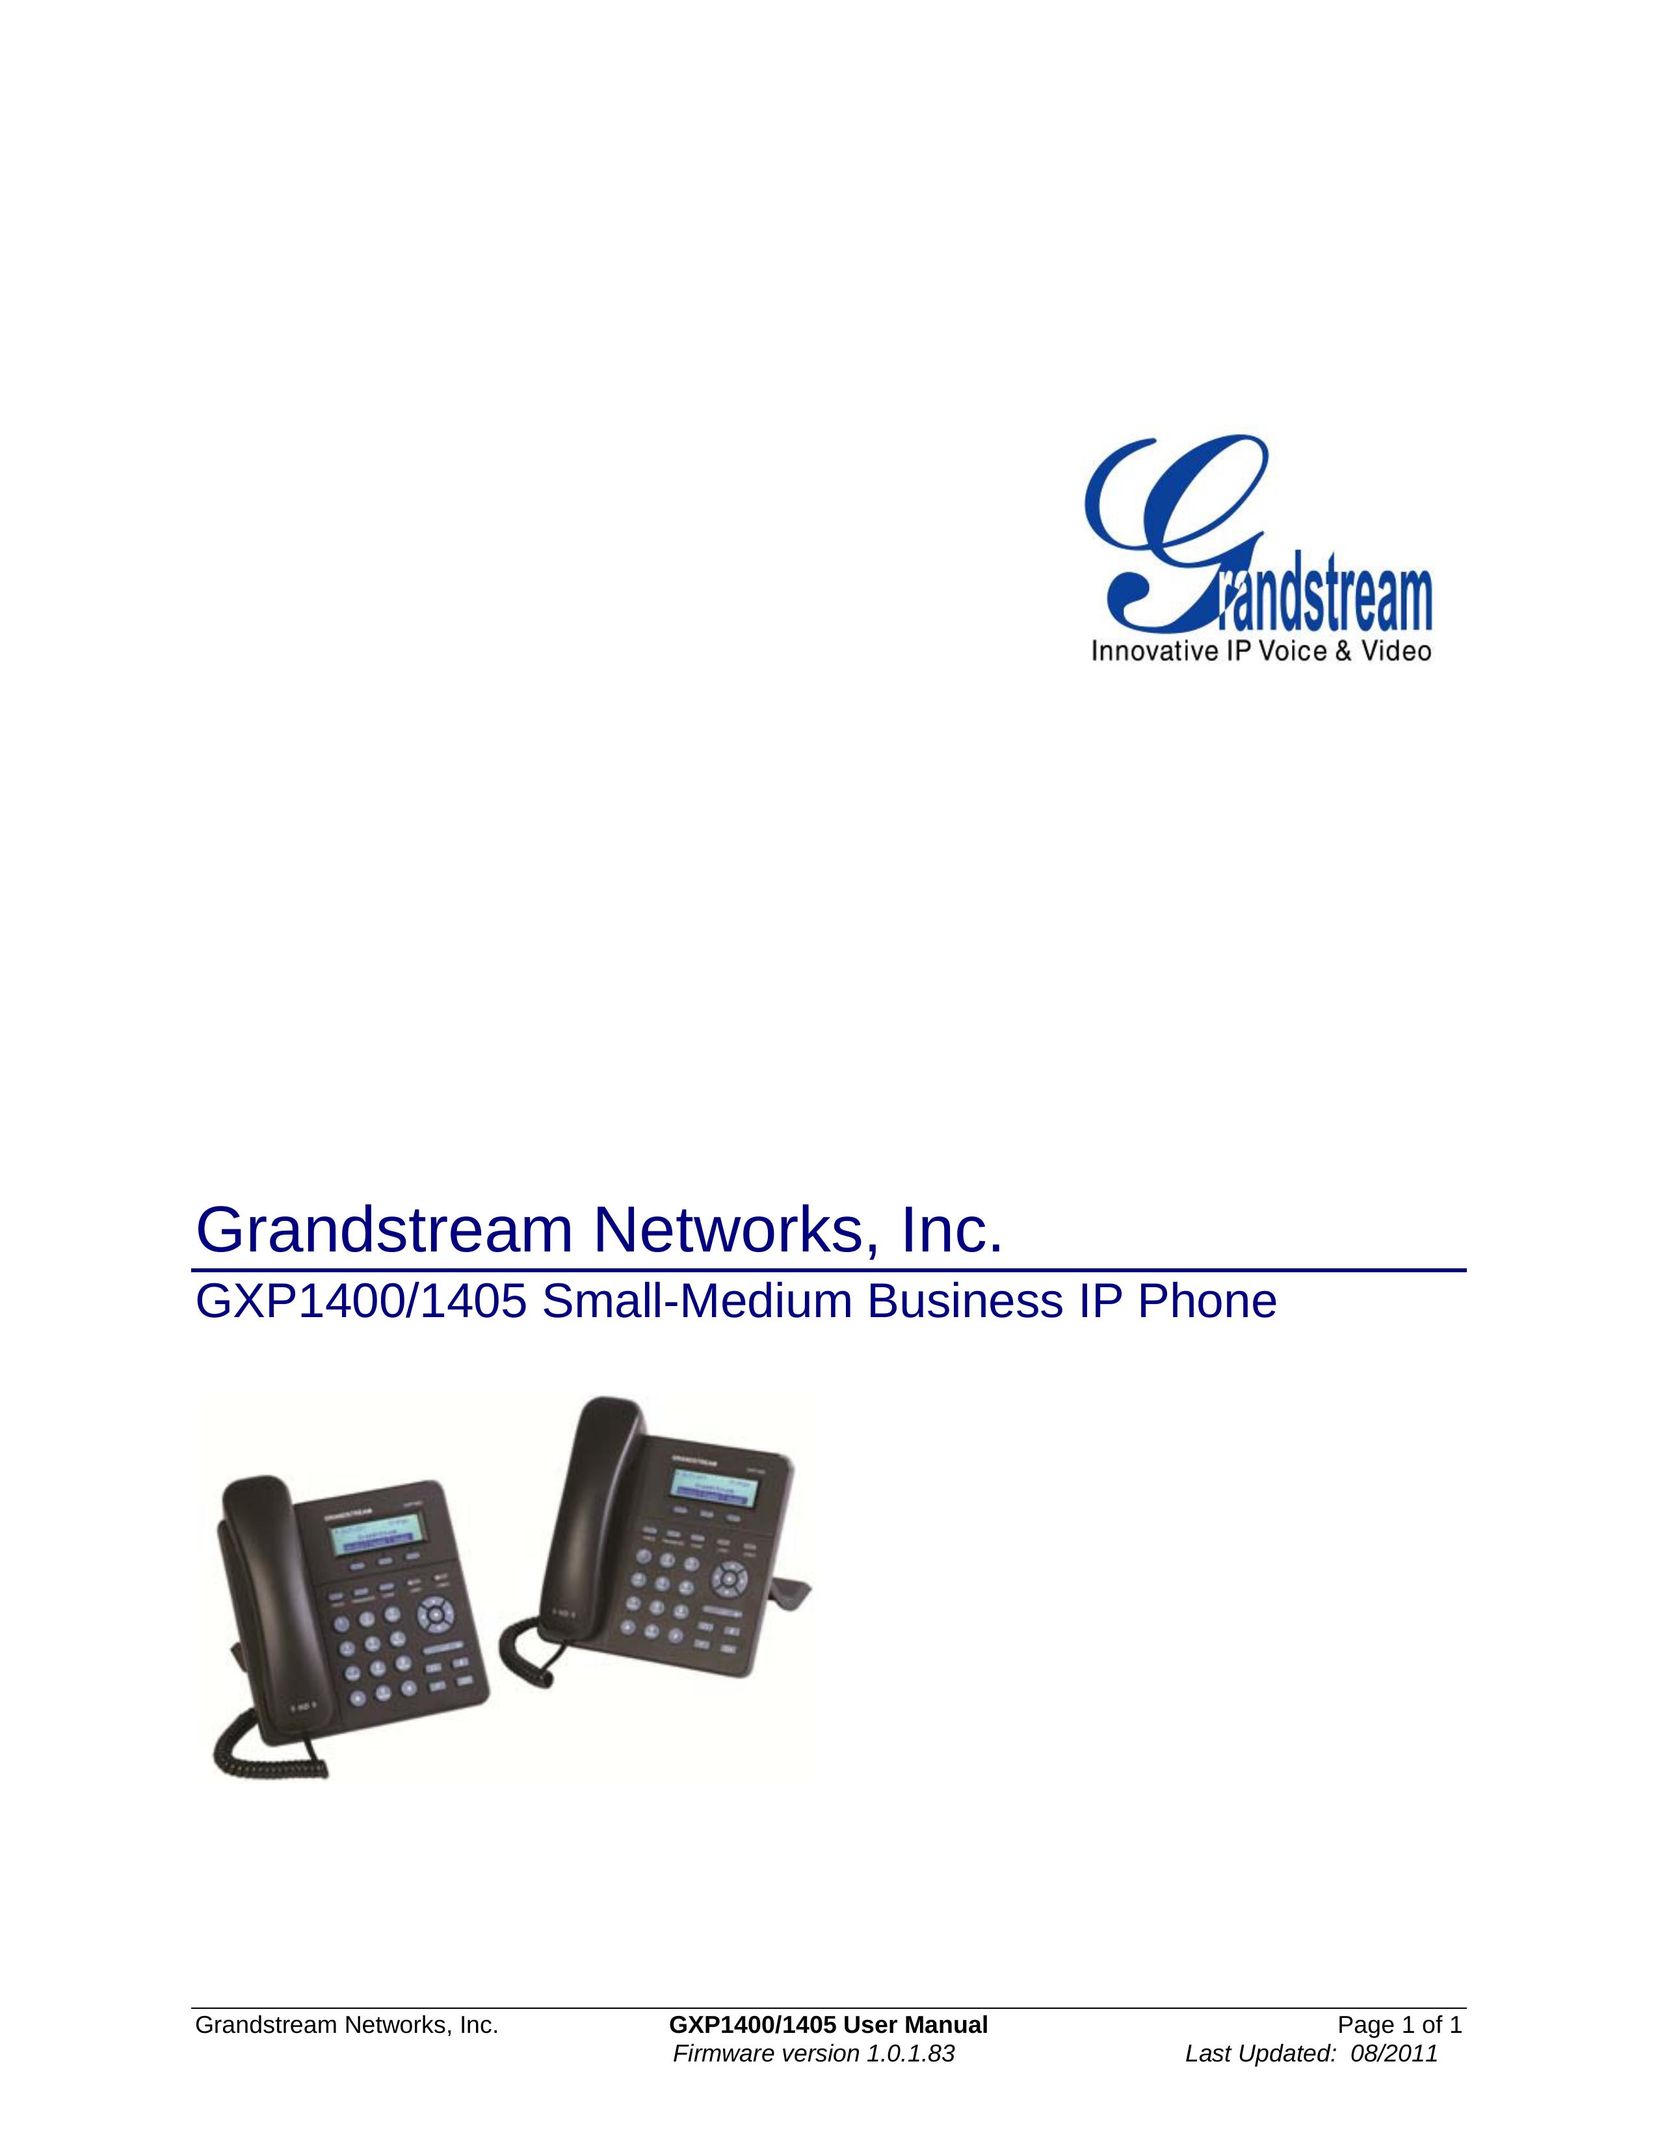 Grandstream Networks GXP1400 IP Phone User Manual